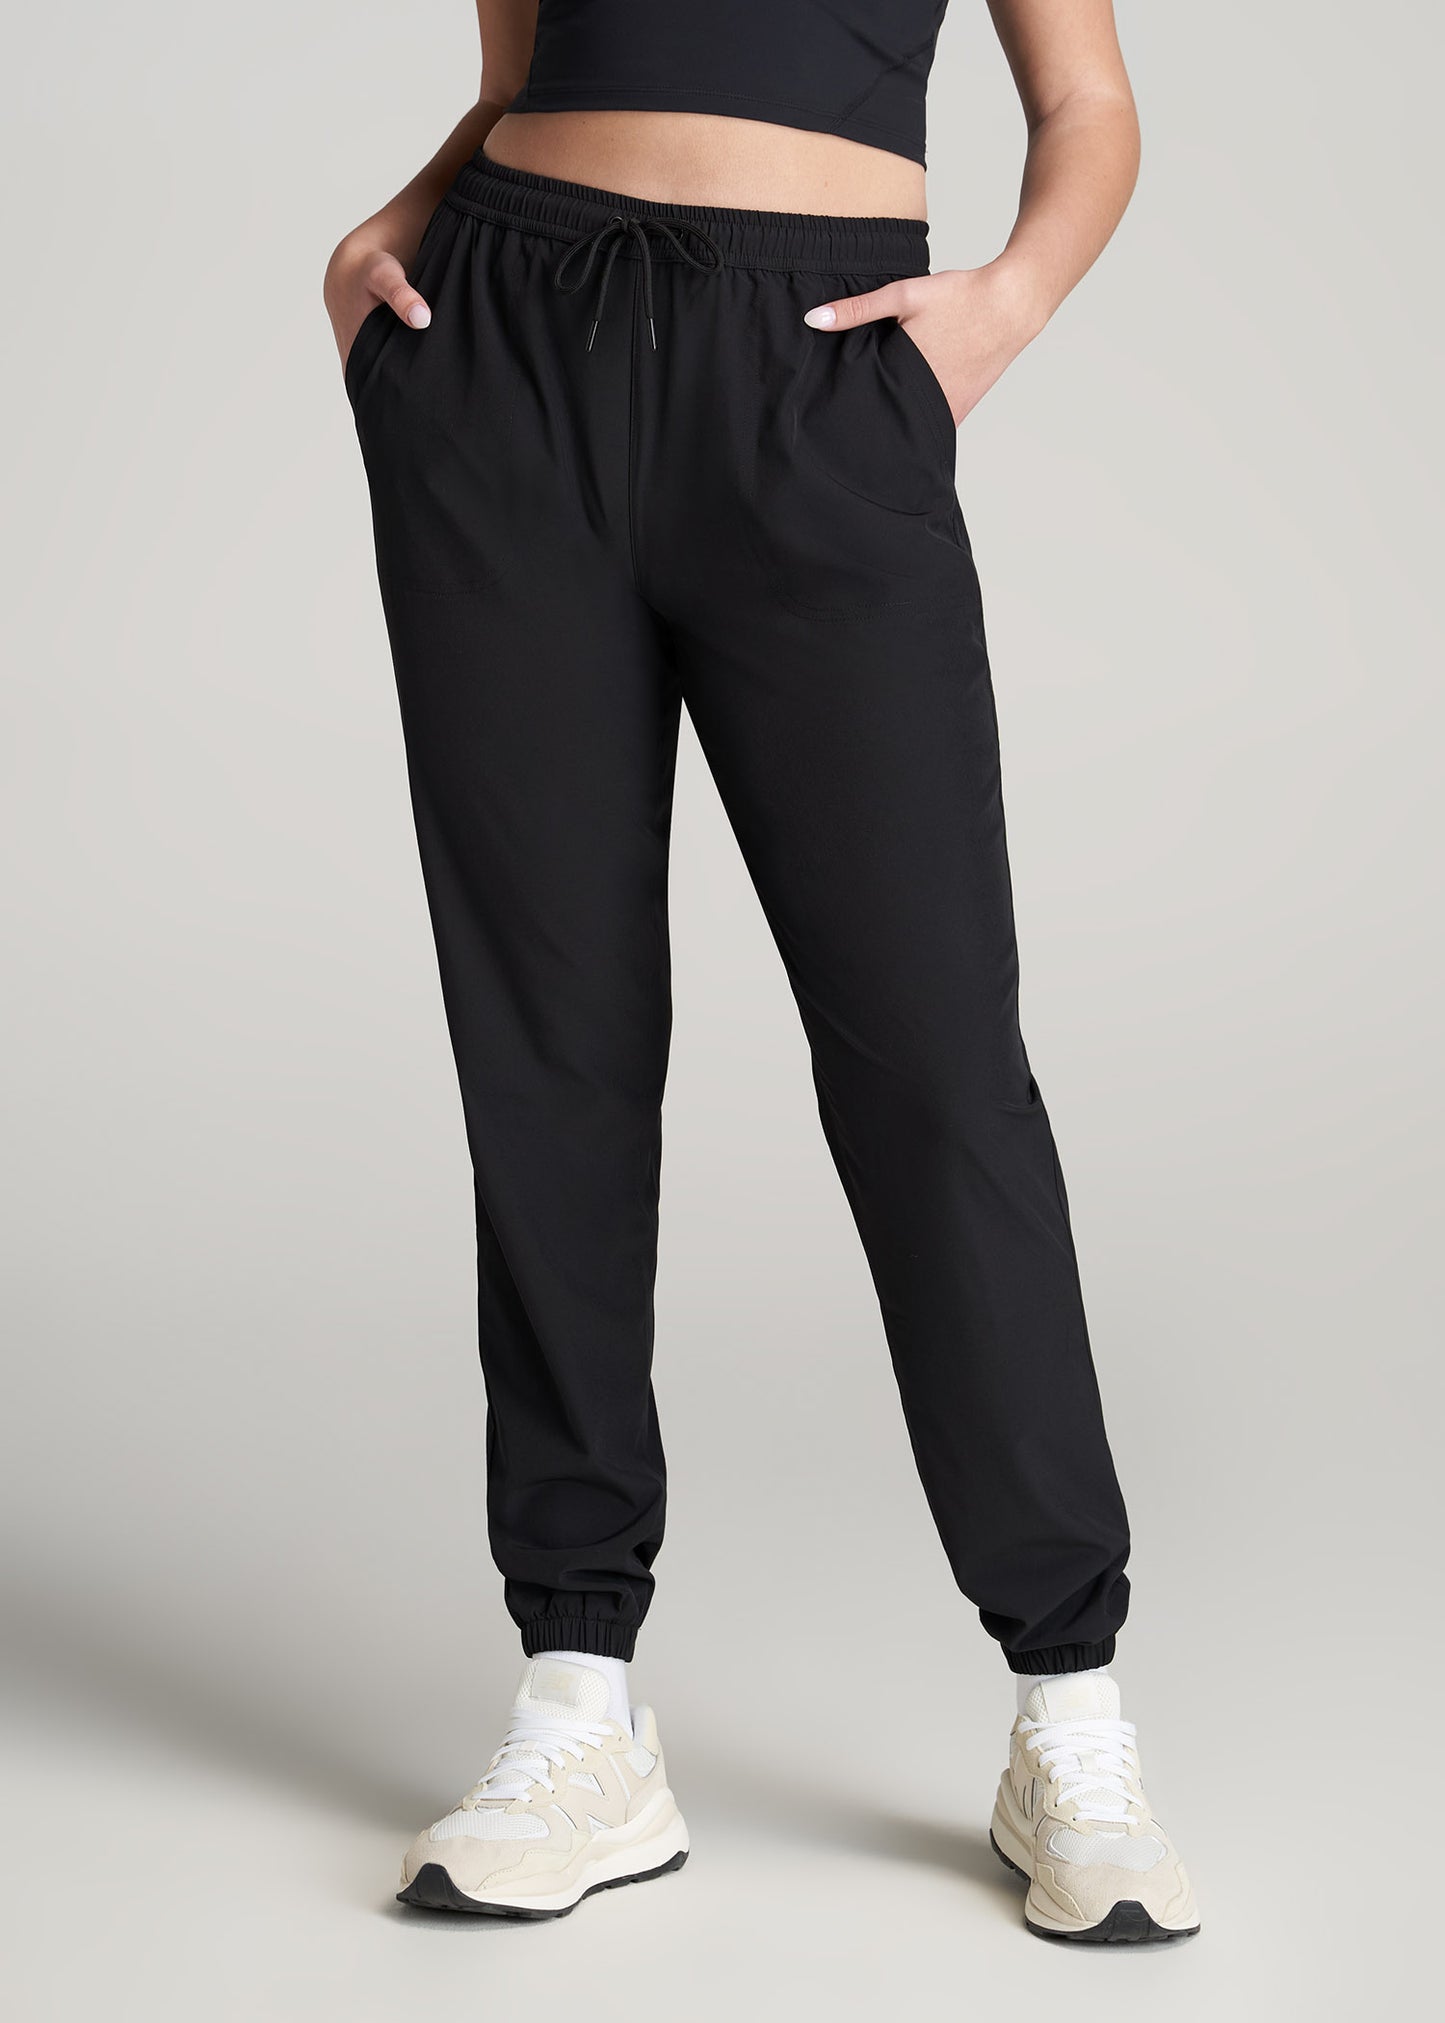 Women's Jogger Pants, Black, Cotton Blend - Jenni Joggers, Tall